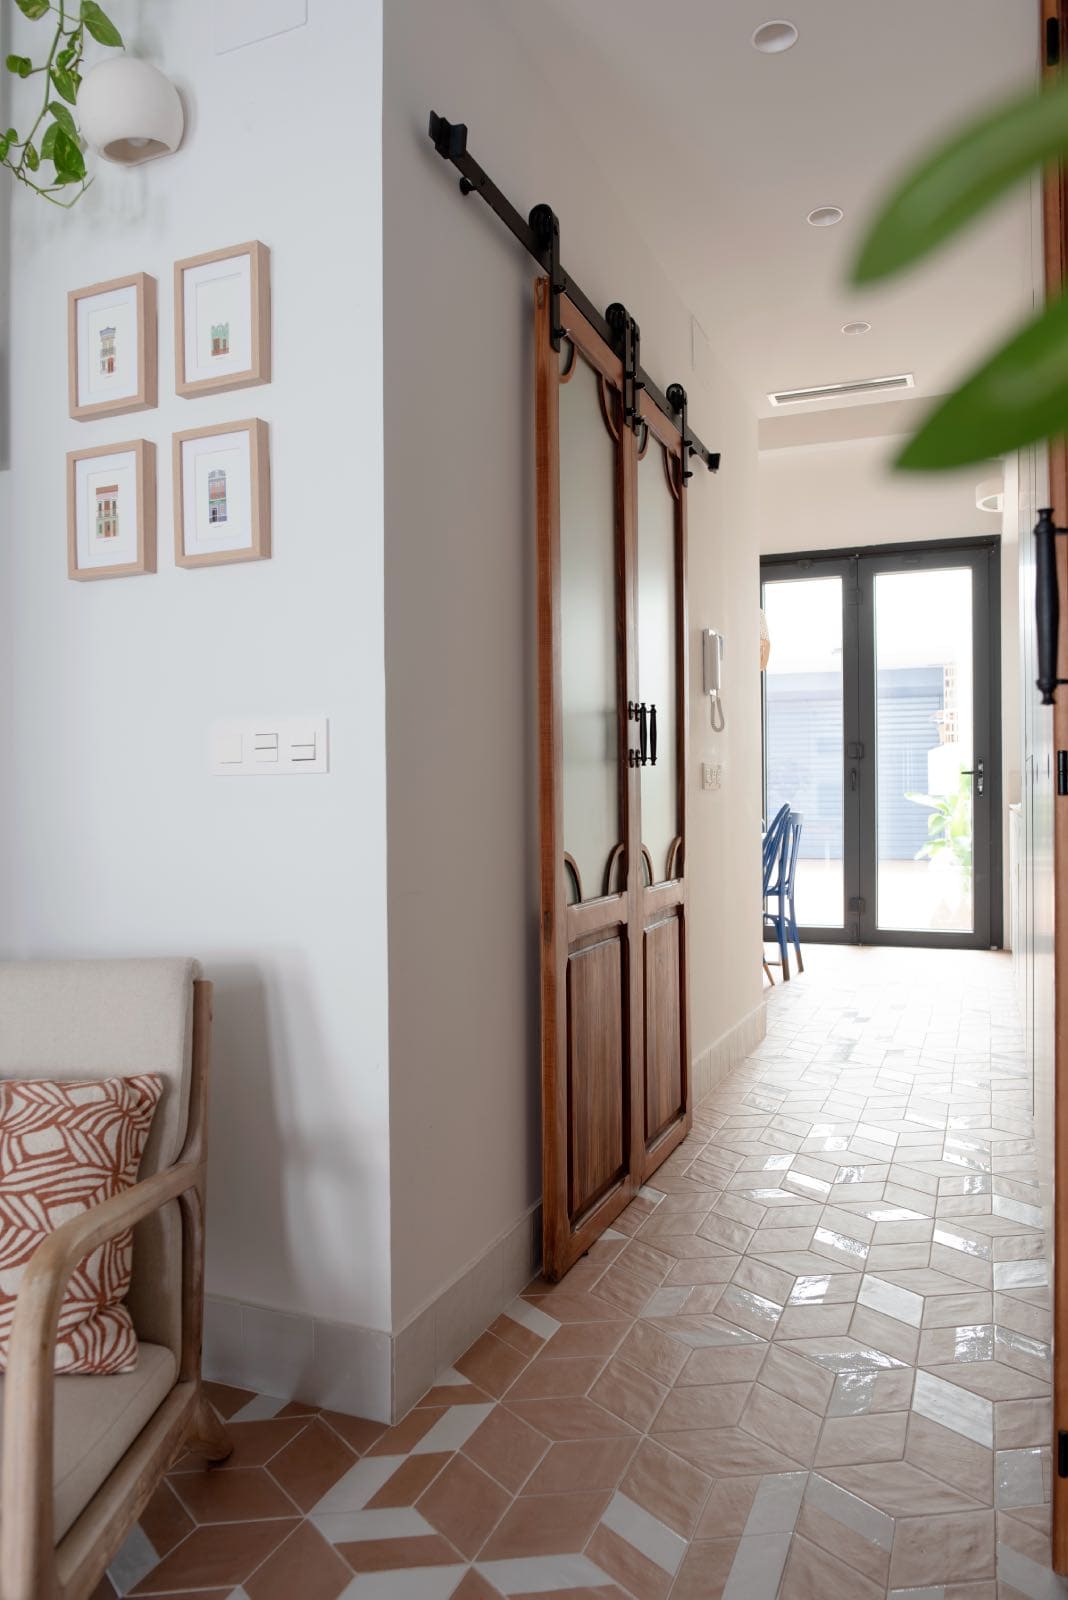 interior pasillo de casa moderna mediterránea en valencia